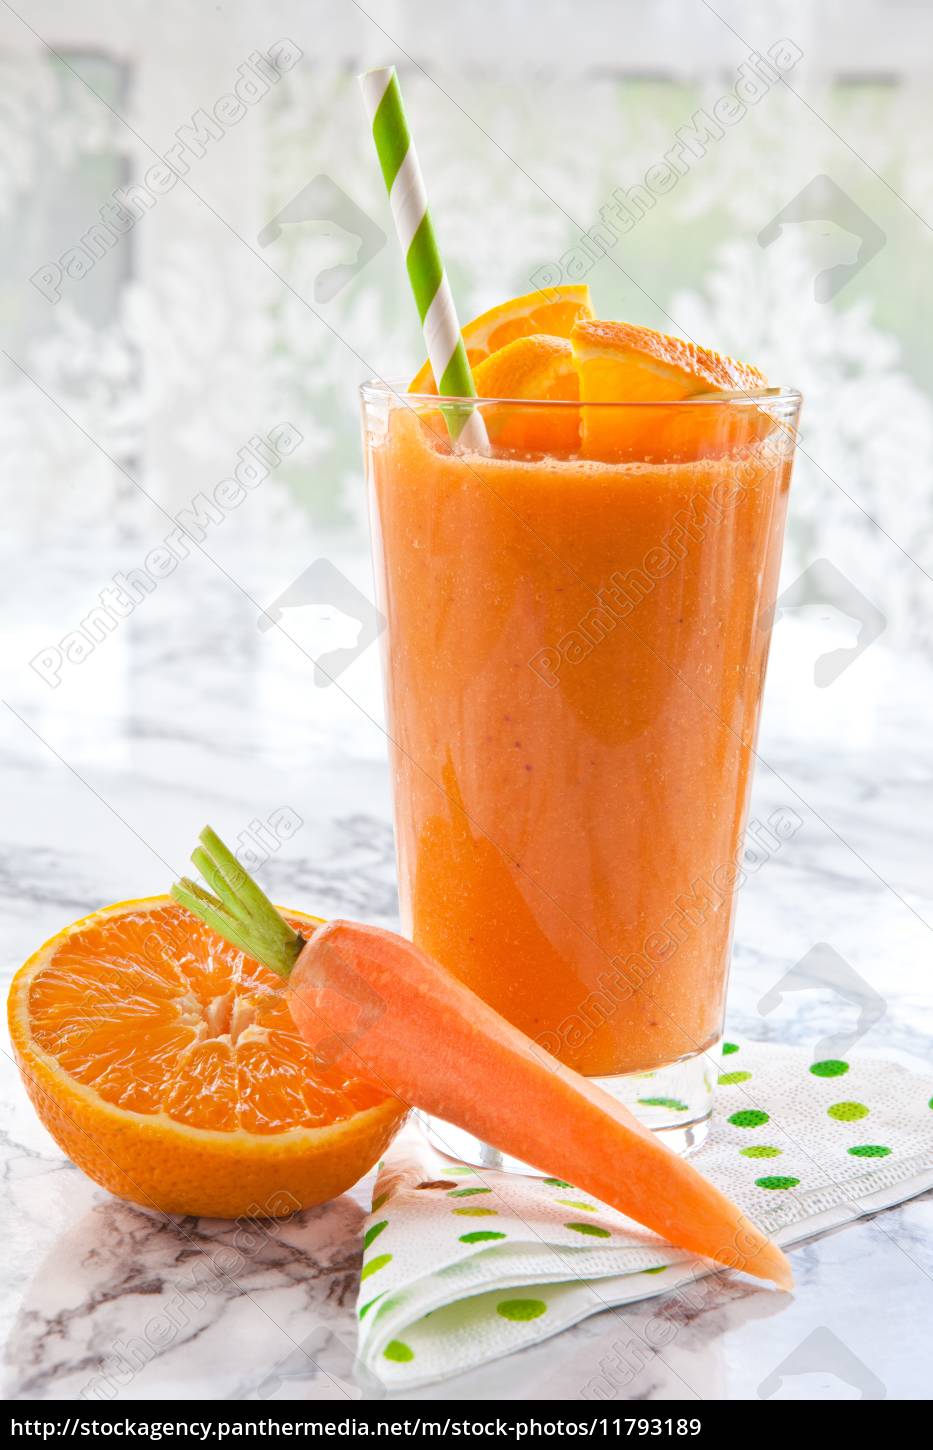 Orangen und Karotten Smoothie - Stockfoto - #11793189 | Bildagentur ...